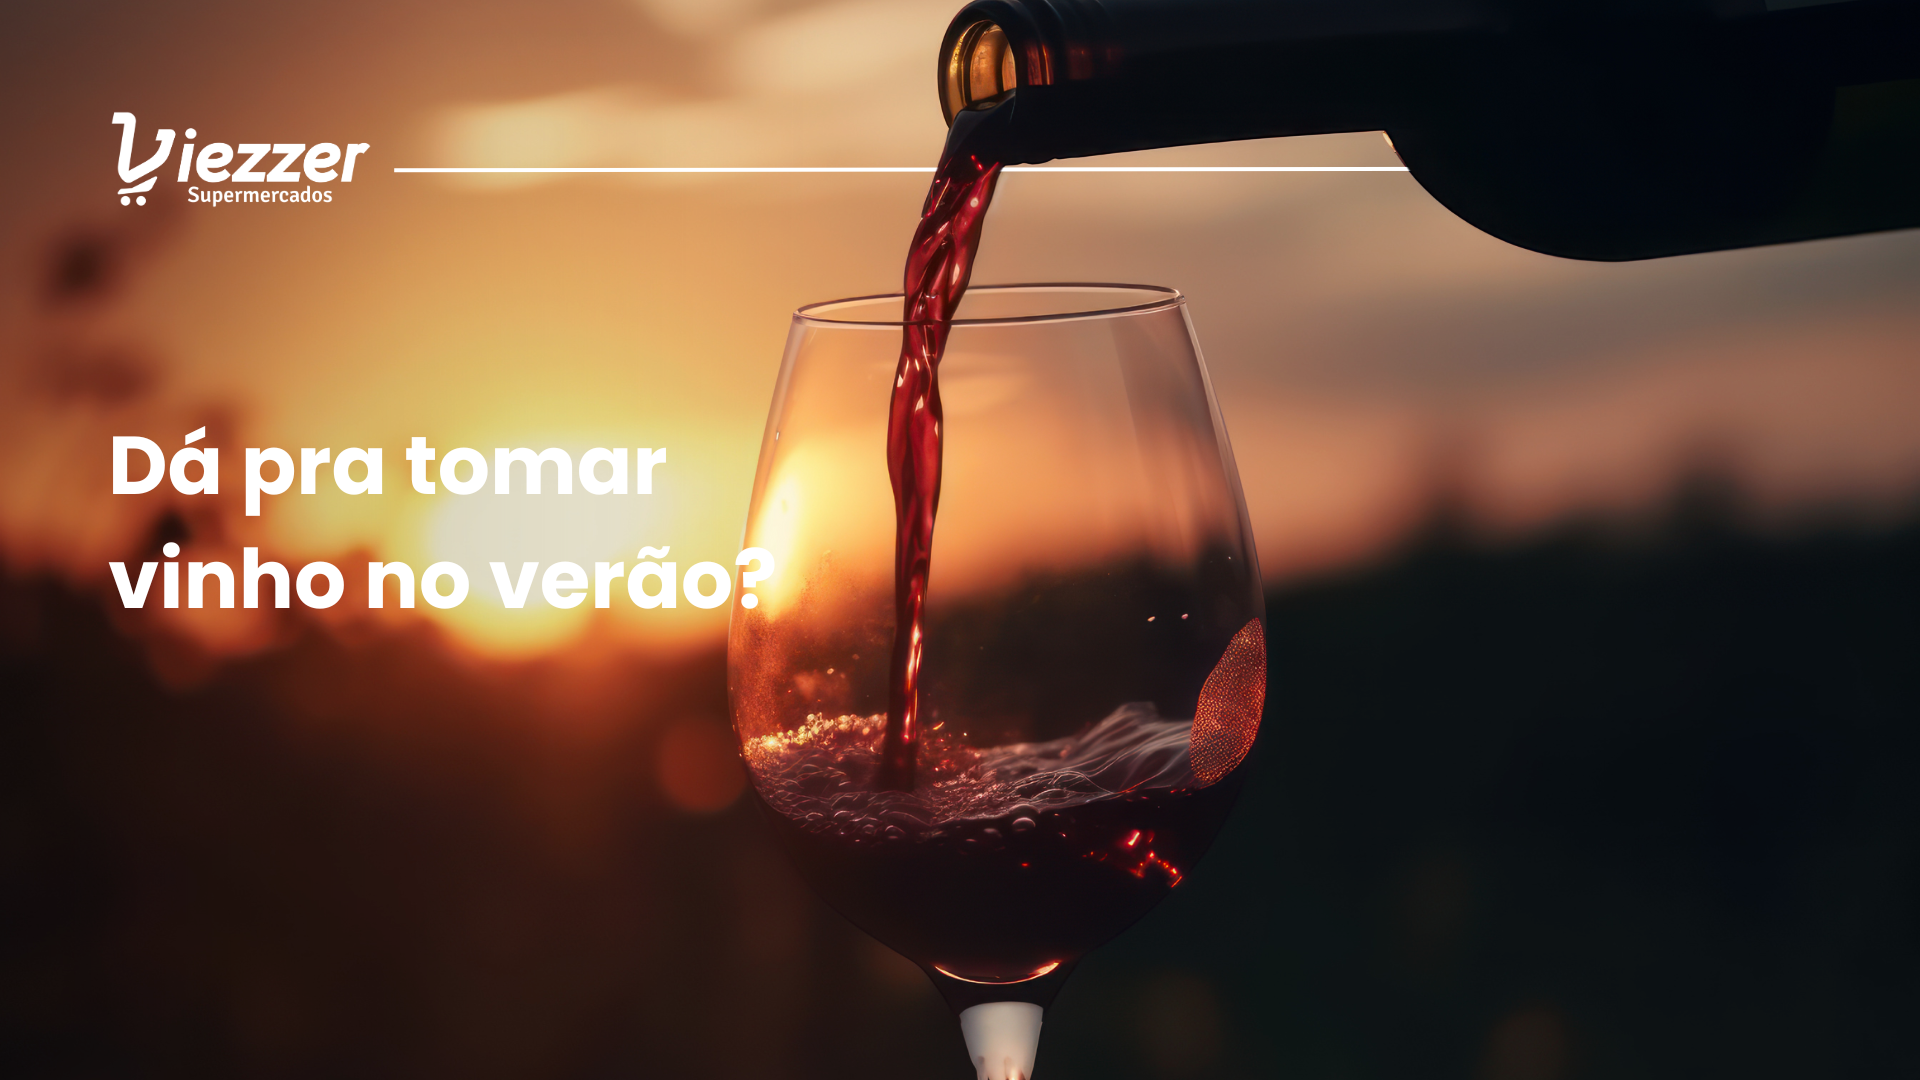 Dá pra tomar vinho no verão? Conheça as melhores harmonizações com o Viezzer.